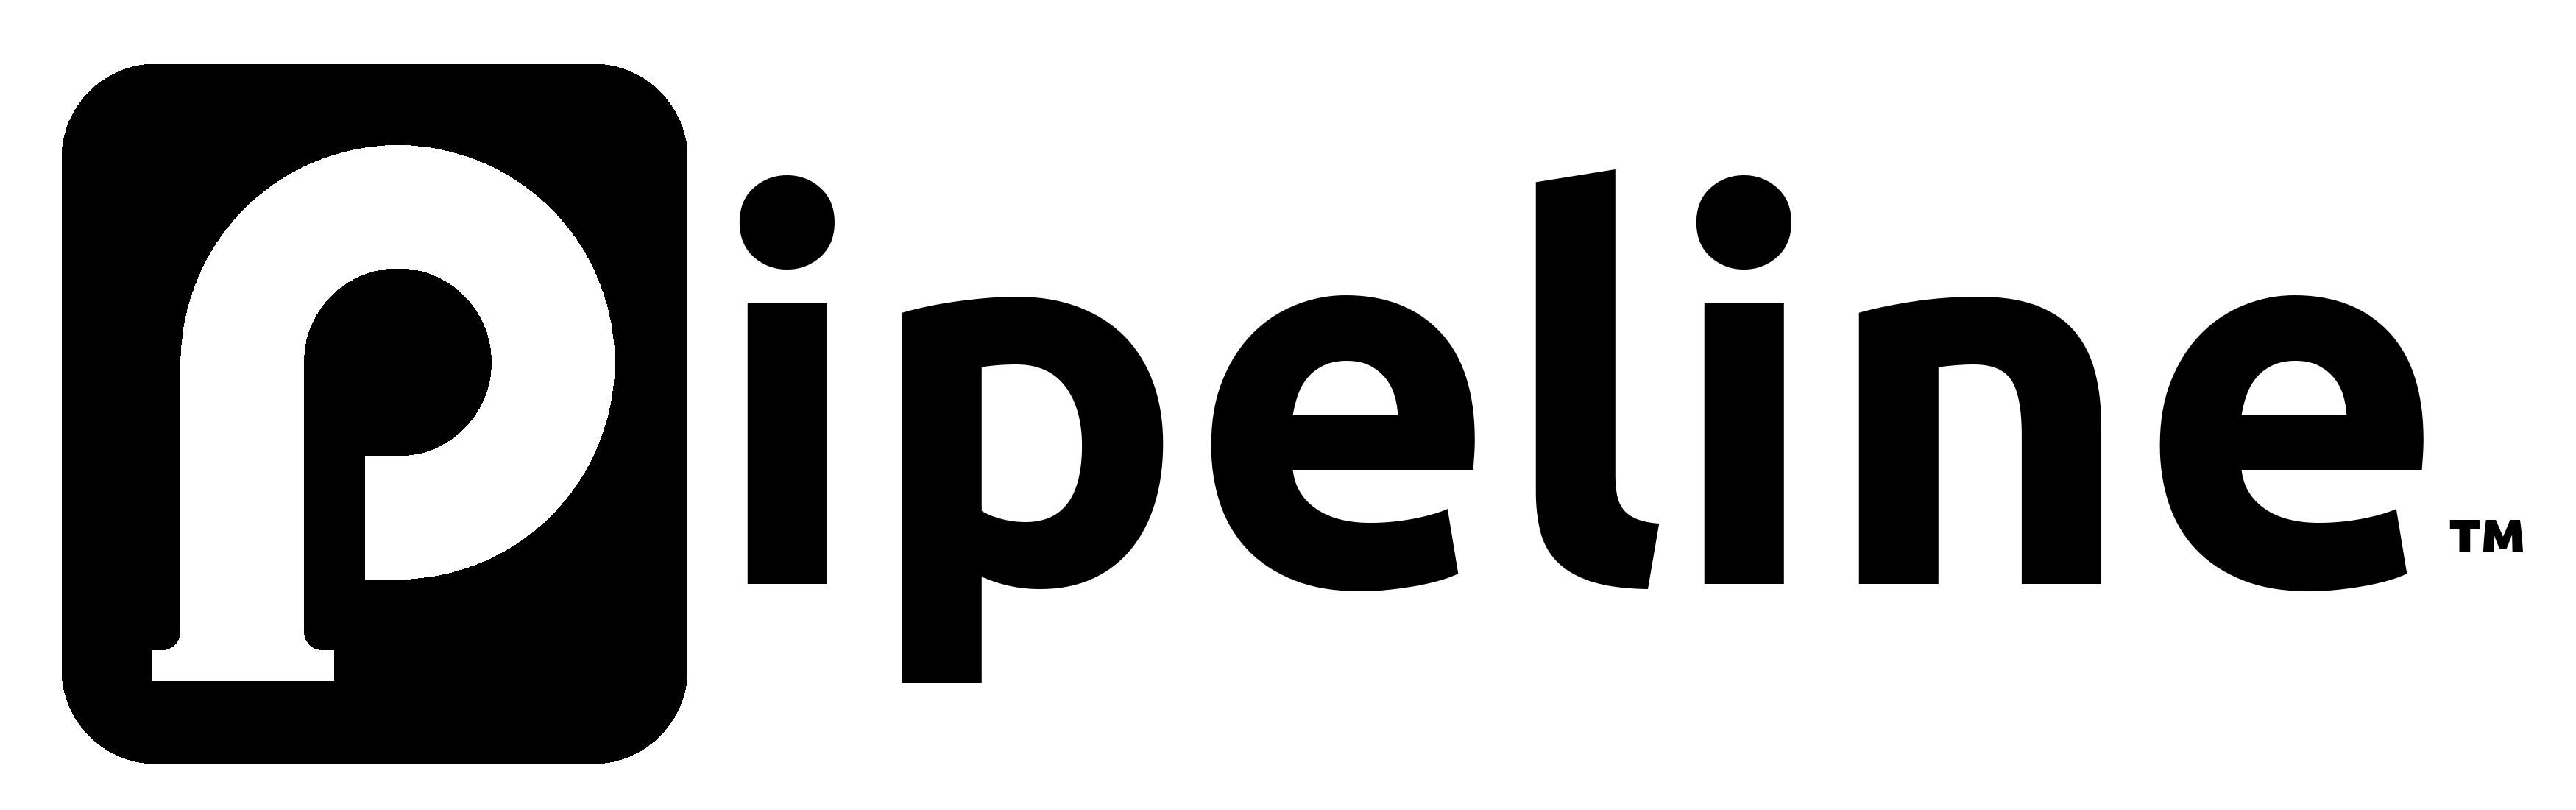 Pipeline logo in black